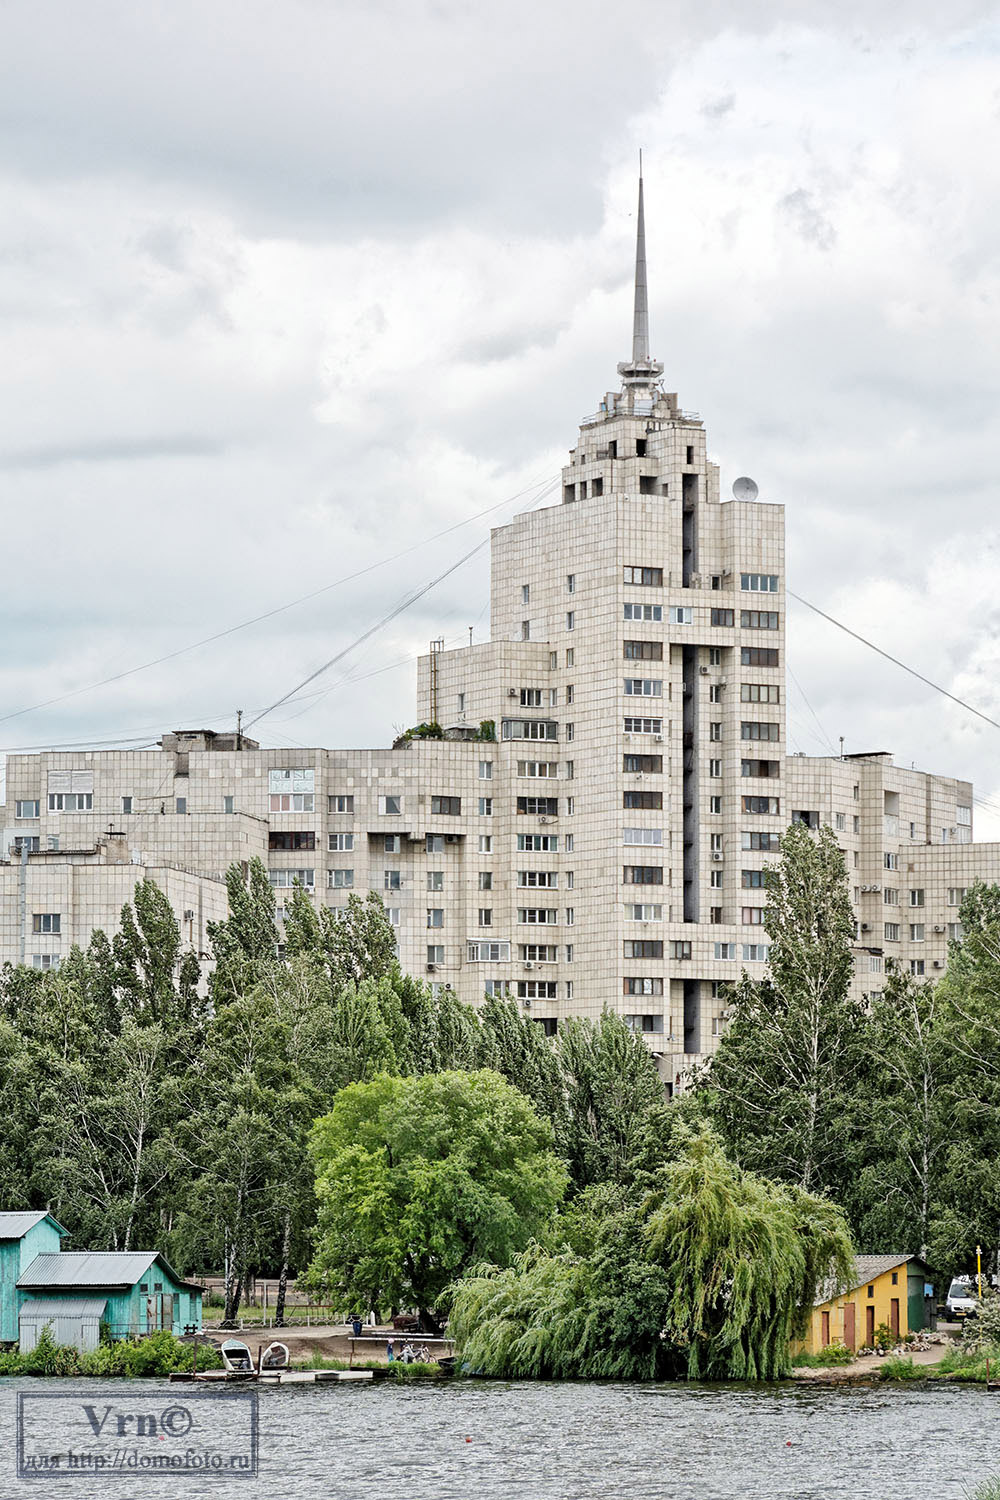 Воронеж, Спортивная набережная, 4 — Фото — PhotoBuildings